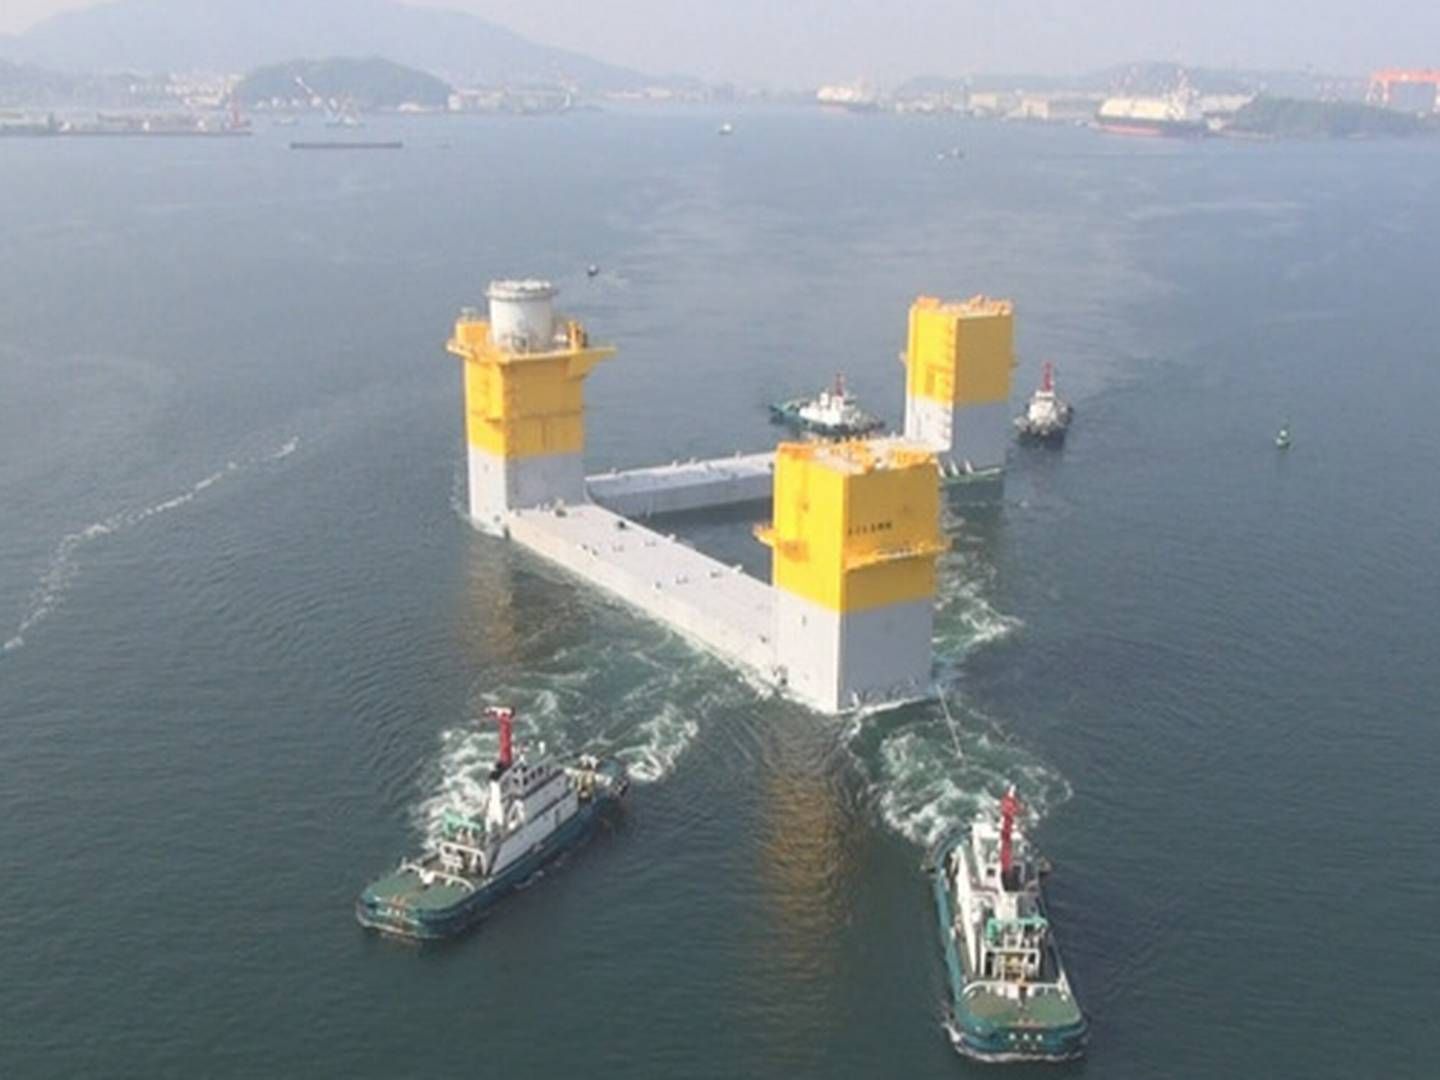 Halvdelen af MHI Vestas Offshore Wind, Mitsubishi Heavy Industries, arbejder på at opsætte en 7 MW-mølle på det flydende fundament som ses på billedet.